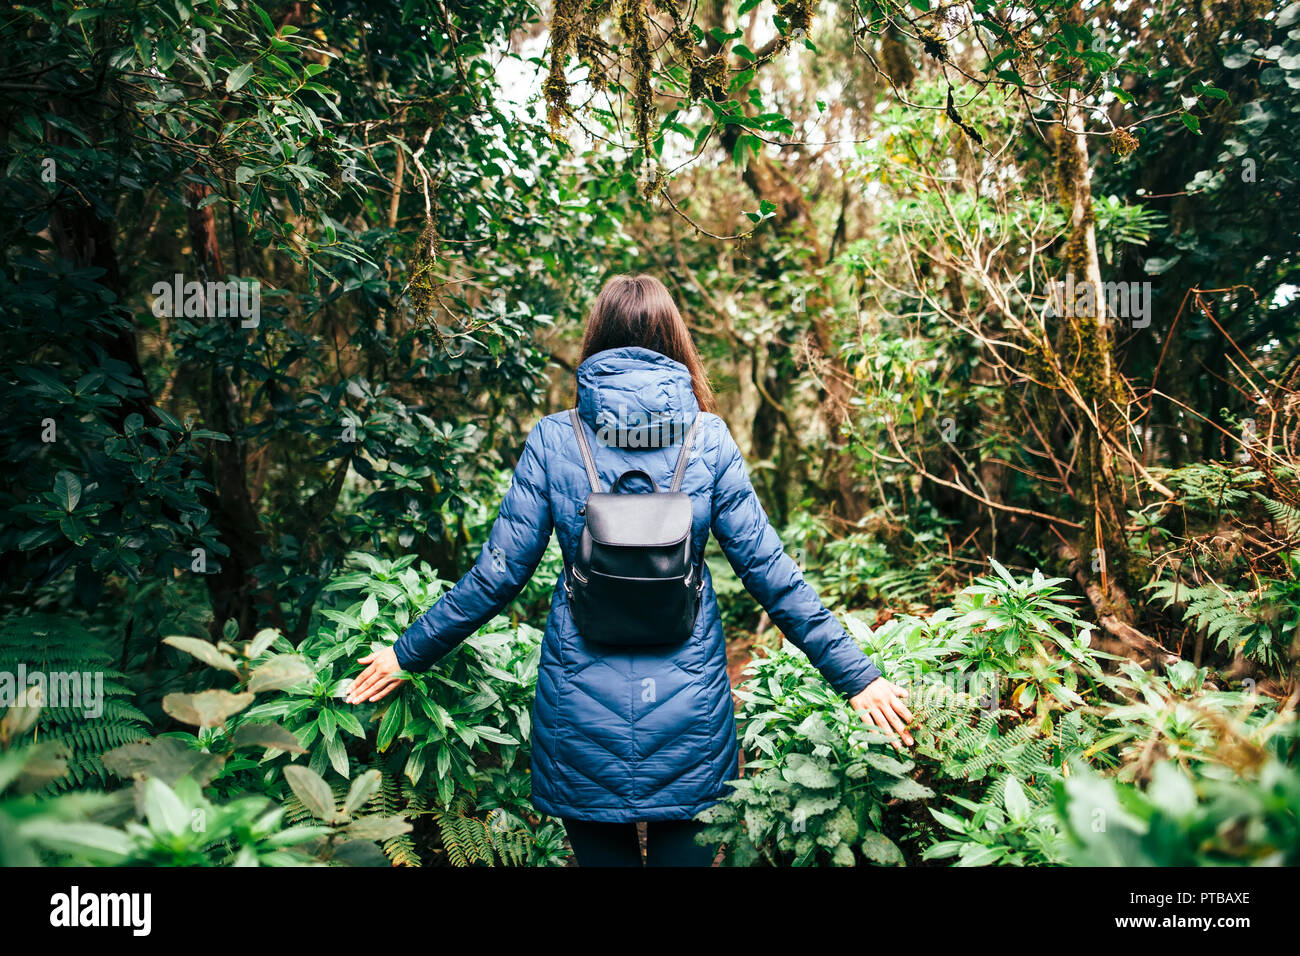 Vue arrière de traveler femme marche en forêt. Concept de voyage. Pays d'Anaga Park, Réserve de biosphère, forêt laurifère, Tenerife, Îles Canaries Banque D'Images